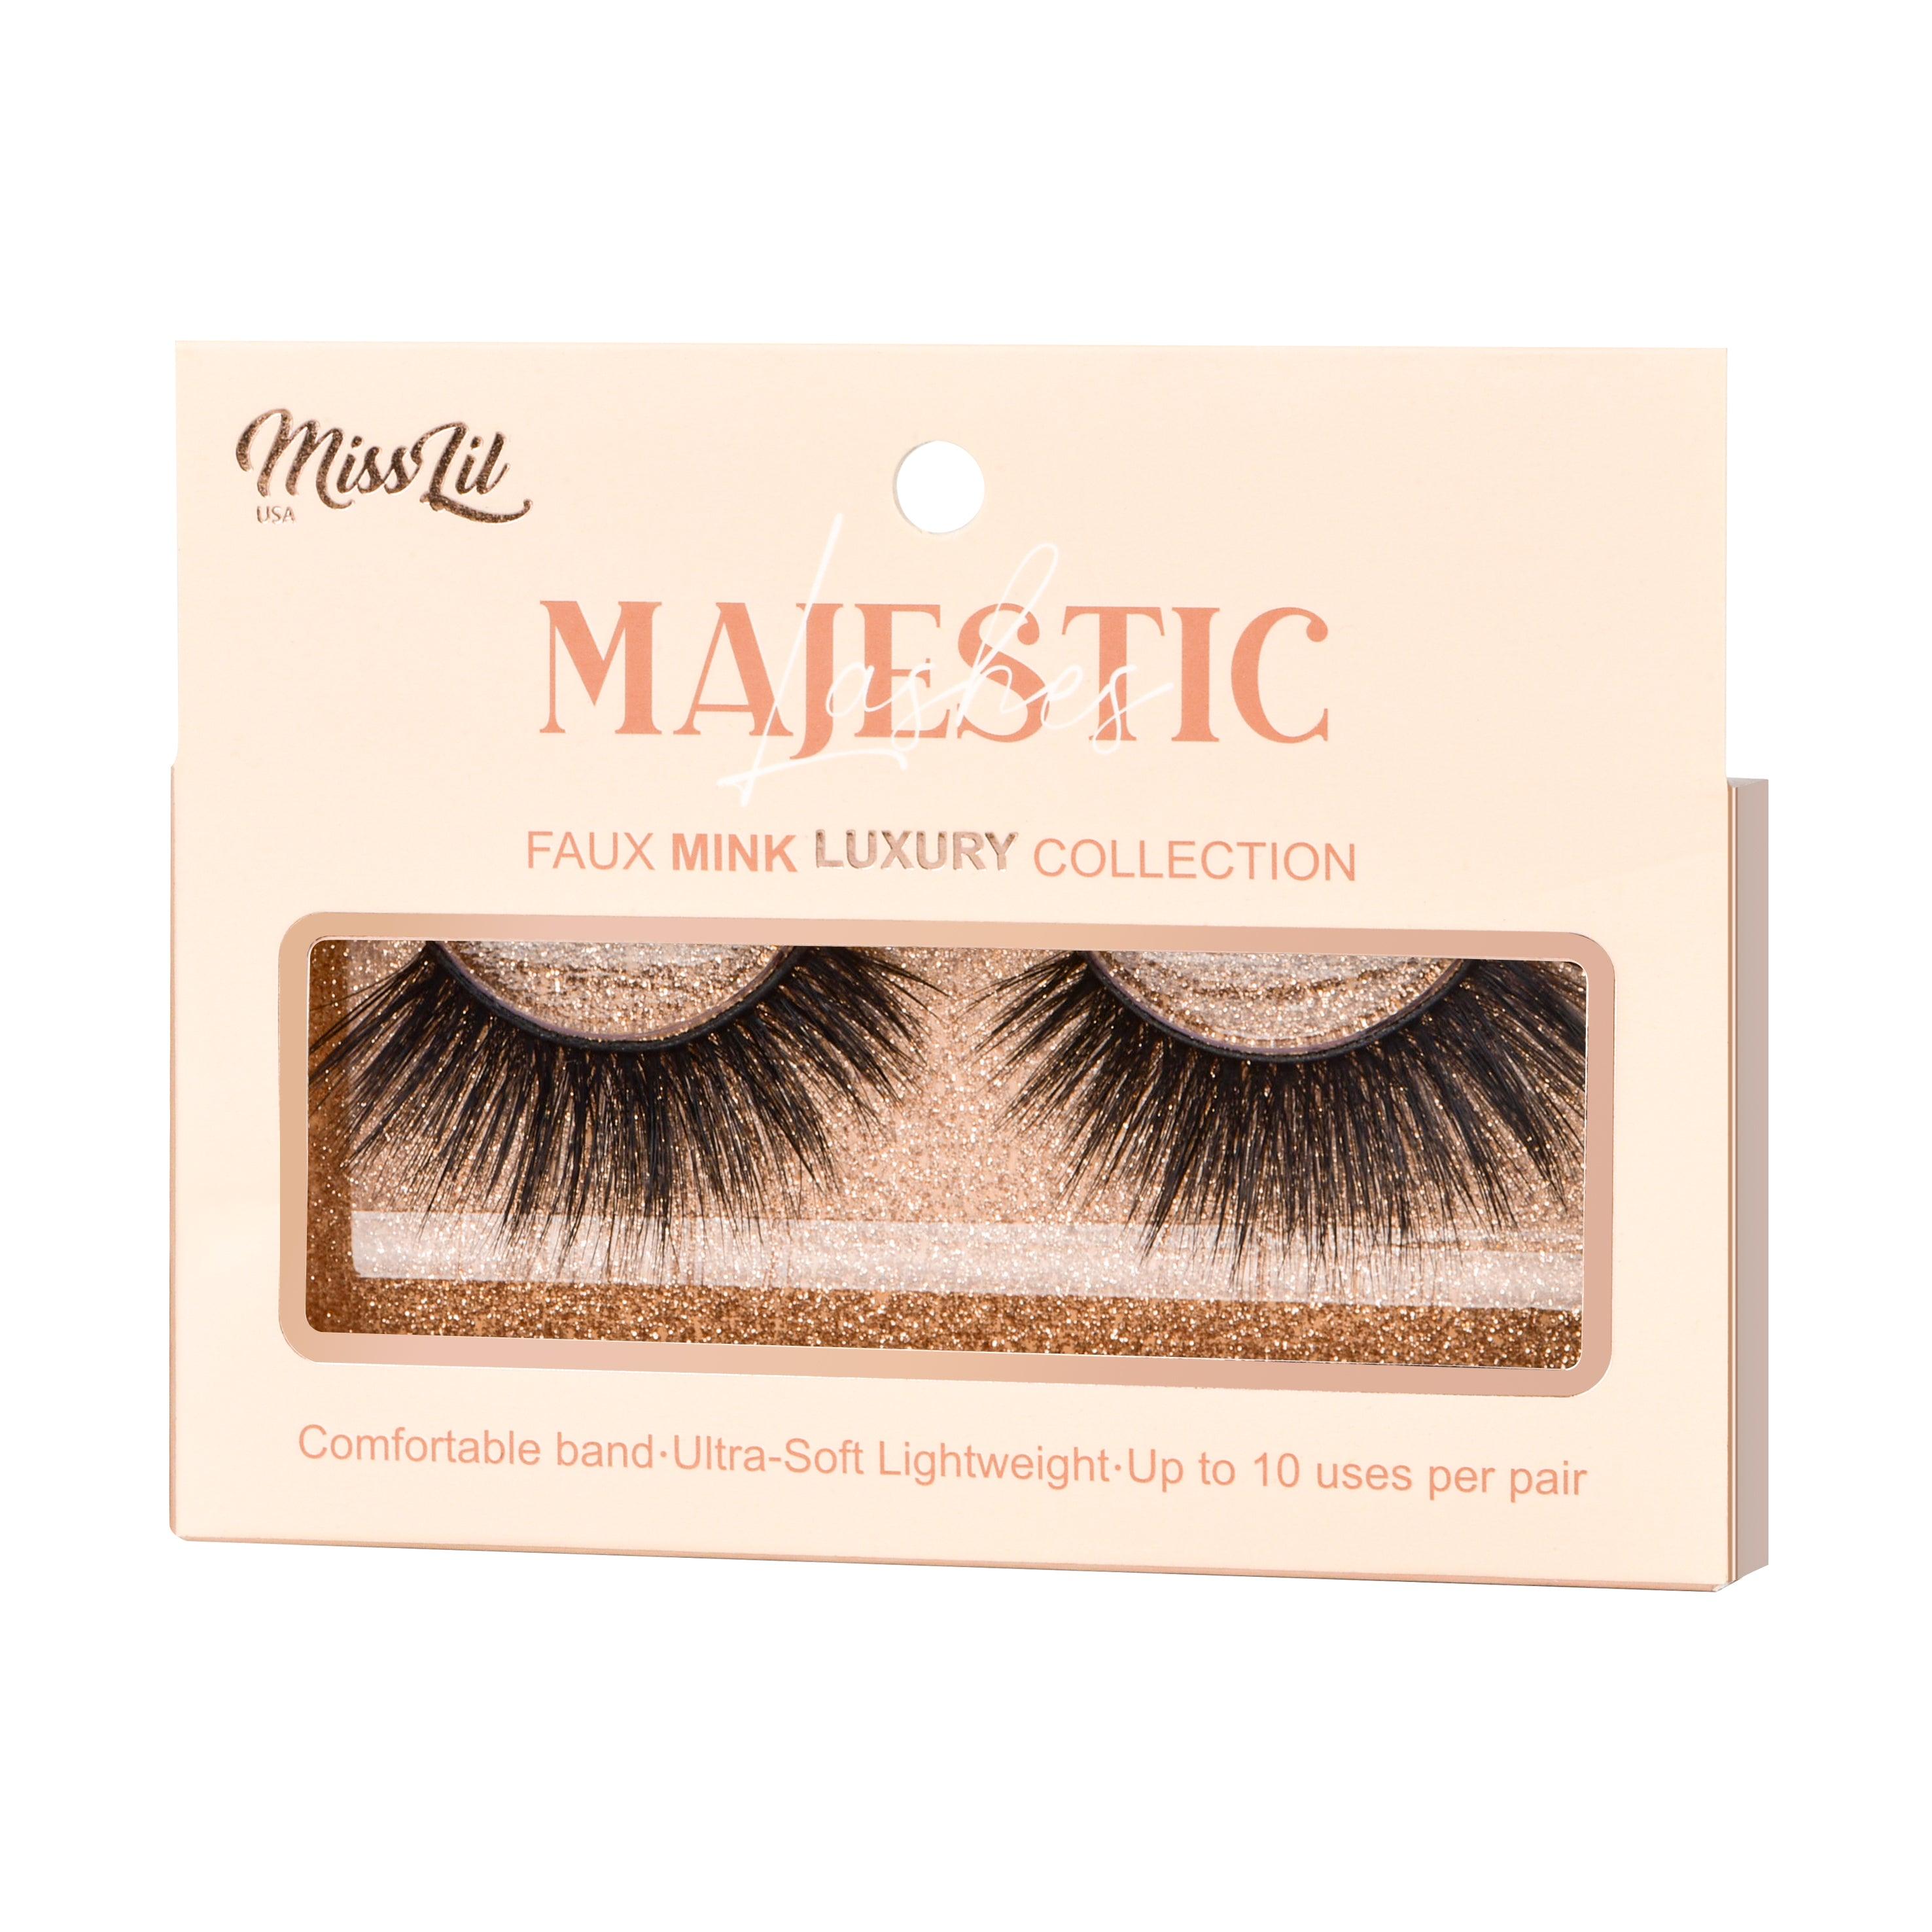 Majestic Collection 29 False Eyelashes - Miss Lil USA Wholesale